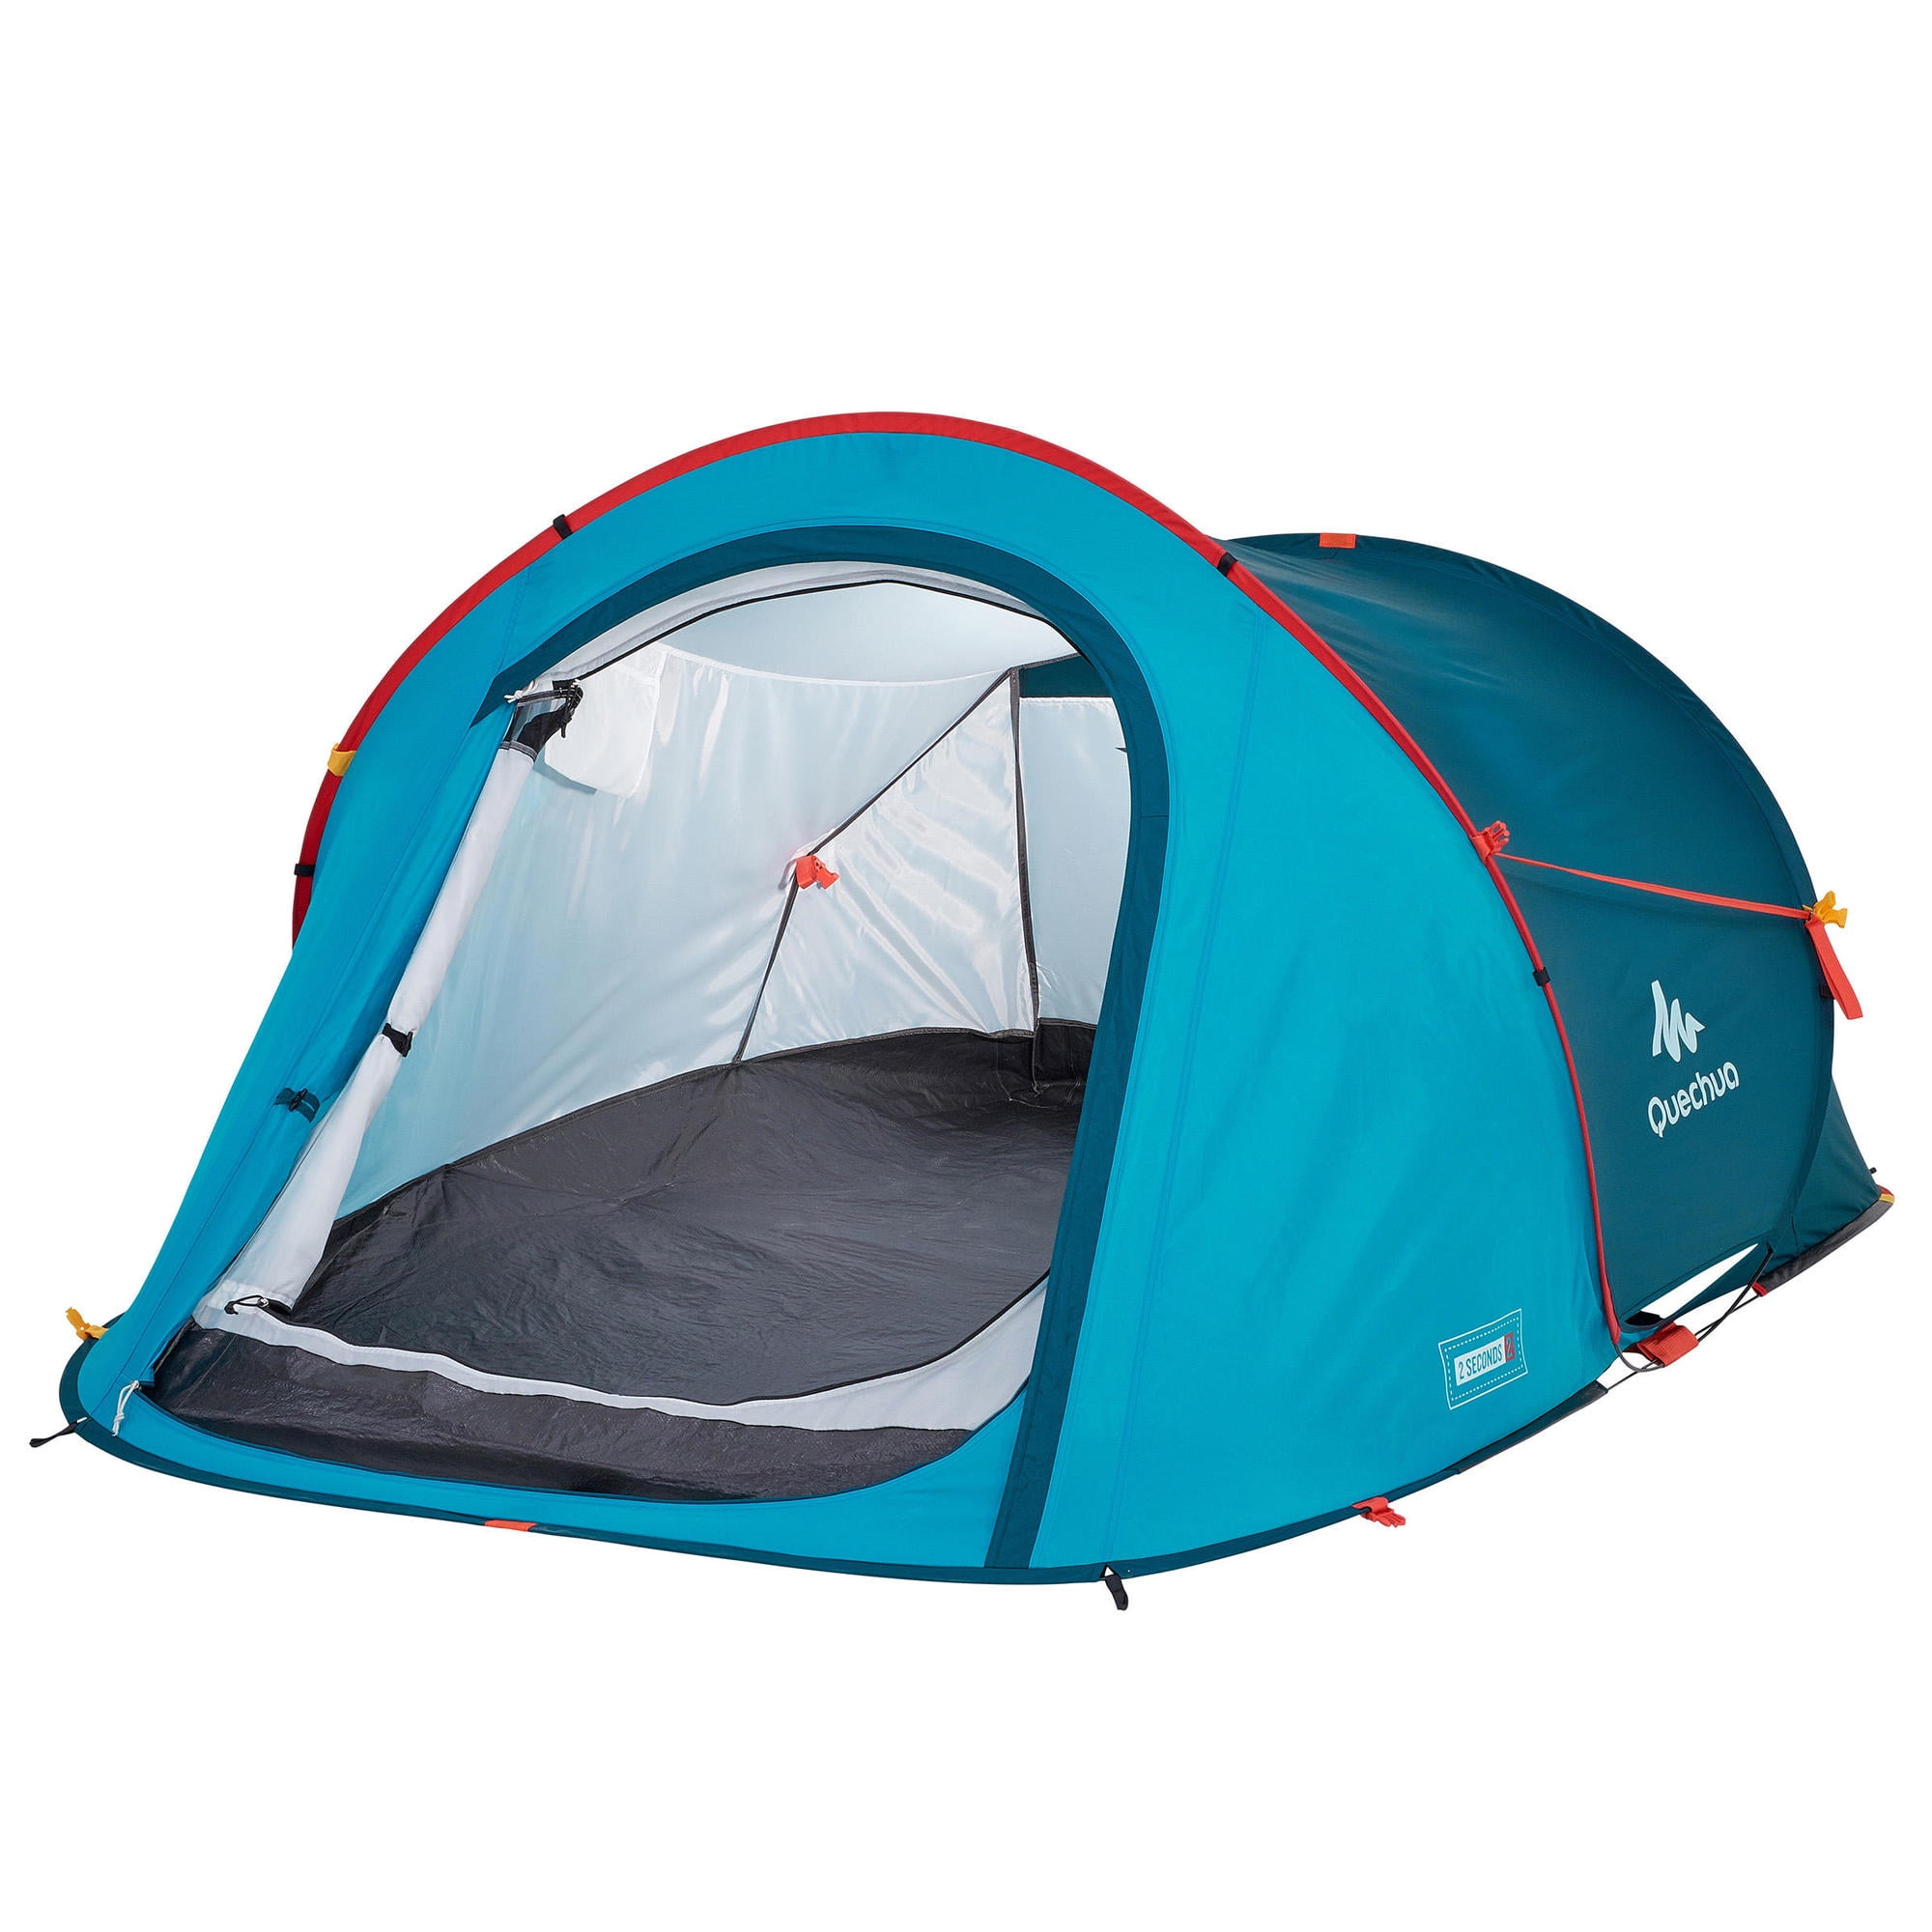 pk kwaliteit Metropolitan Decathlon Quechua, Instant 2 Second Pop Up, Portable Outdoor Camping Tent,  Waterproof, Windproof, 2 Person - Walmart.com